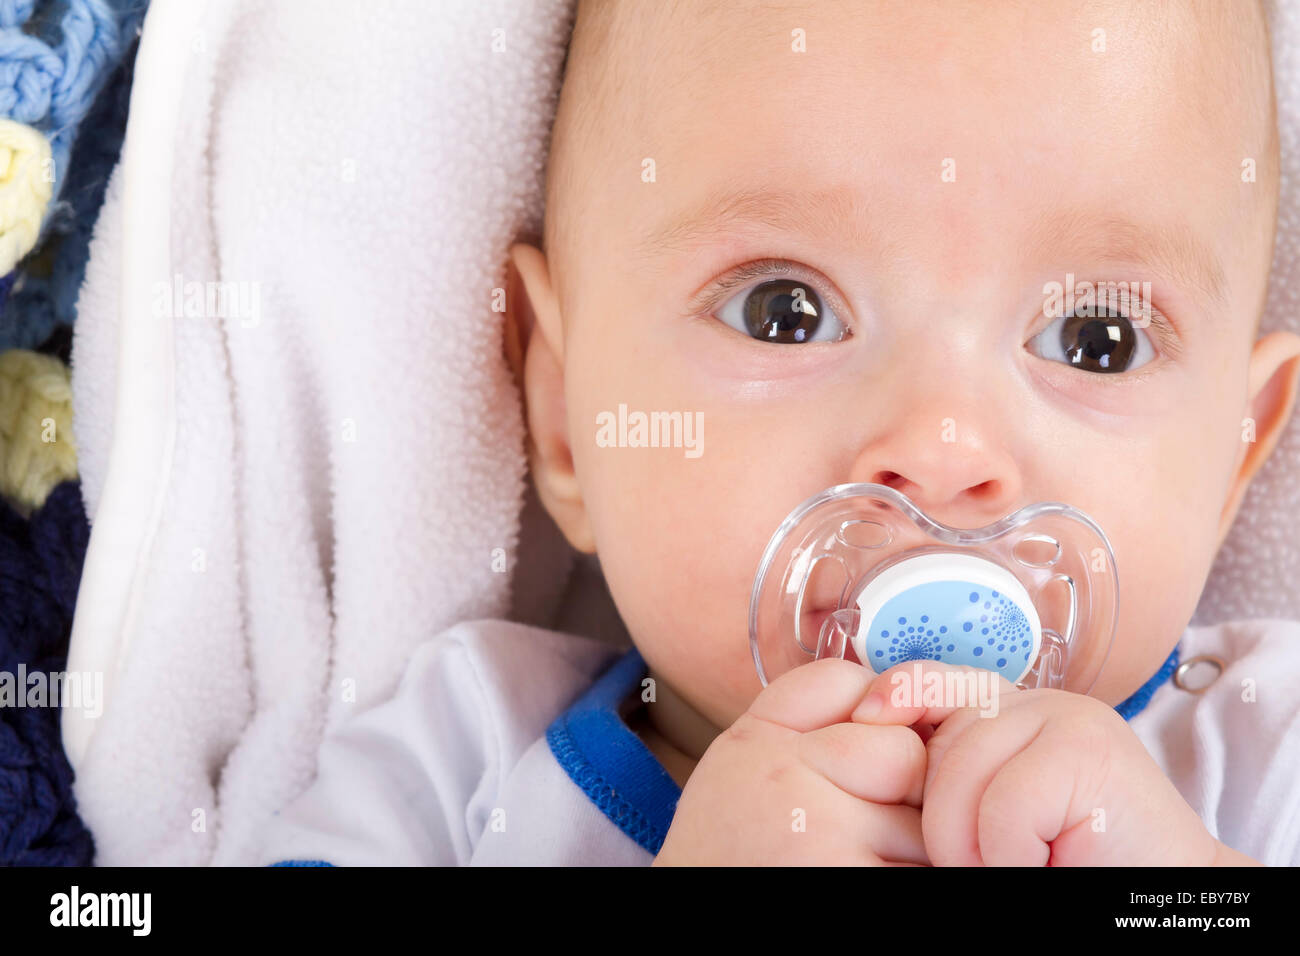 Mignon bébé avec une tétine looking at camera Banque D'Images